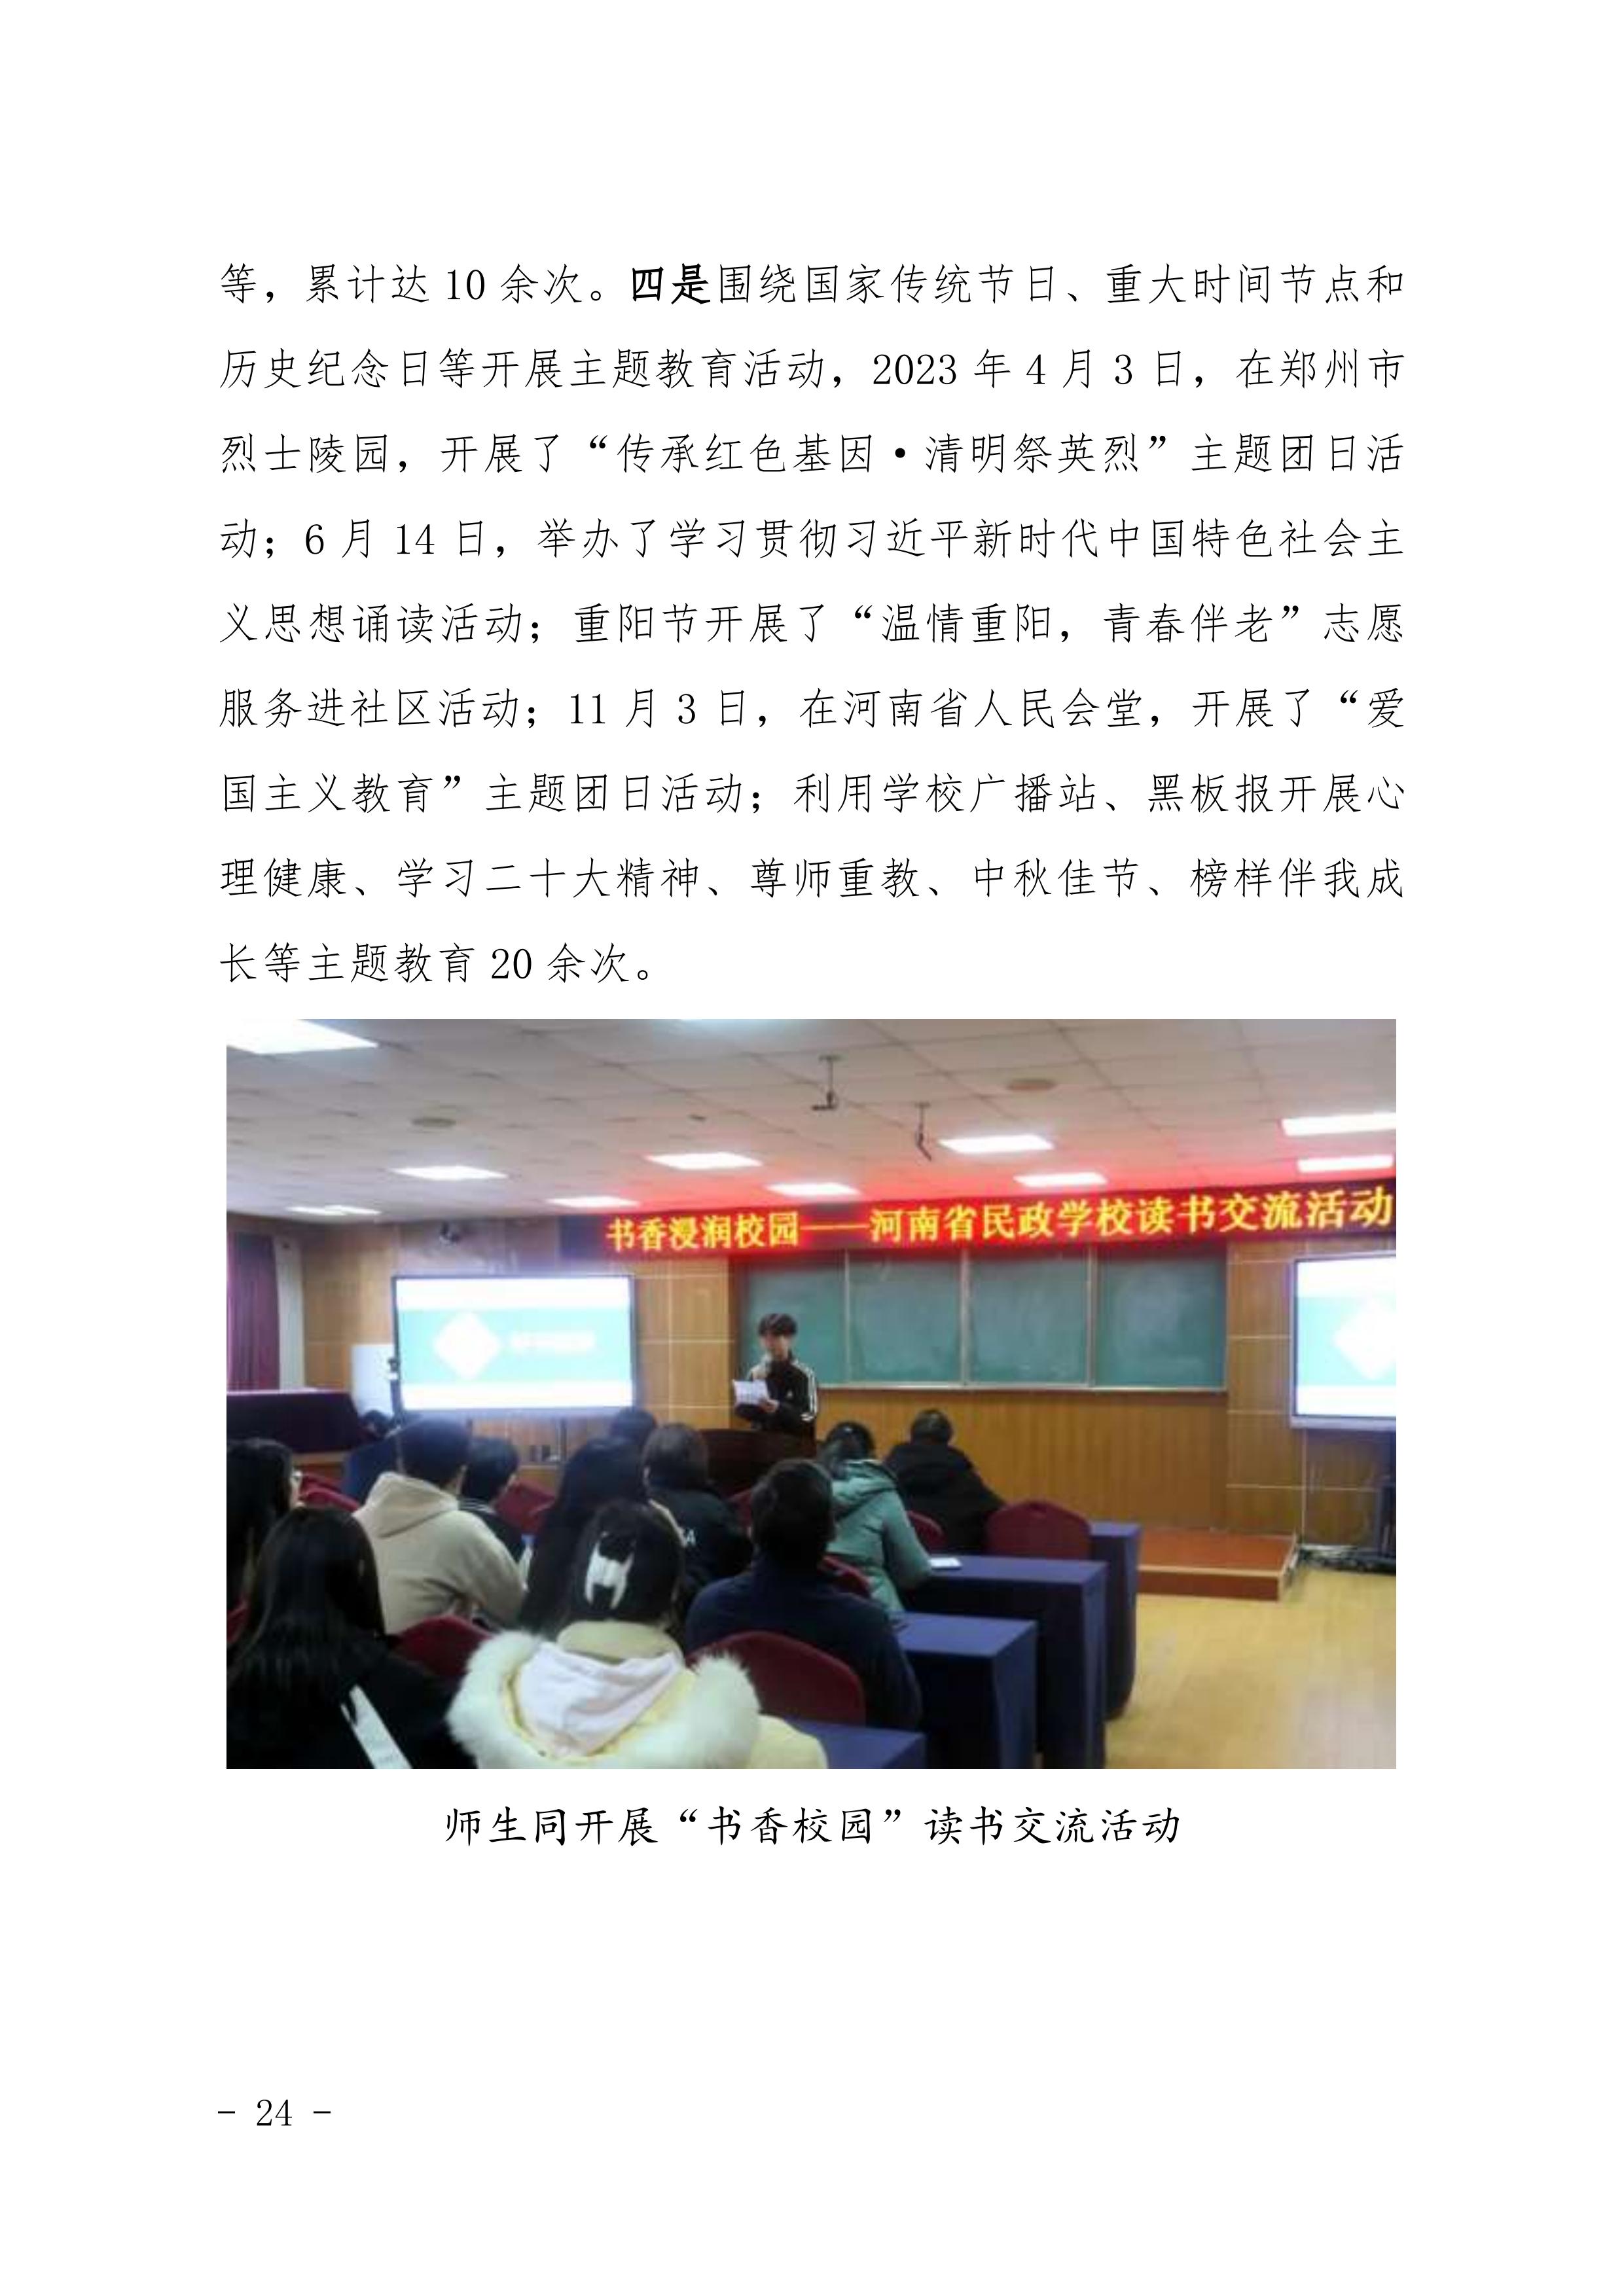 河南省民政学校职业教育质量报告（2023年度）发布版_27.jpg